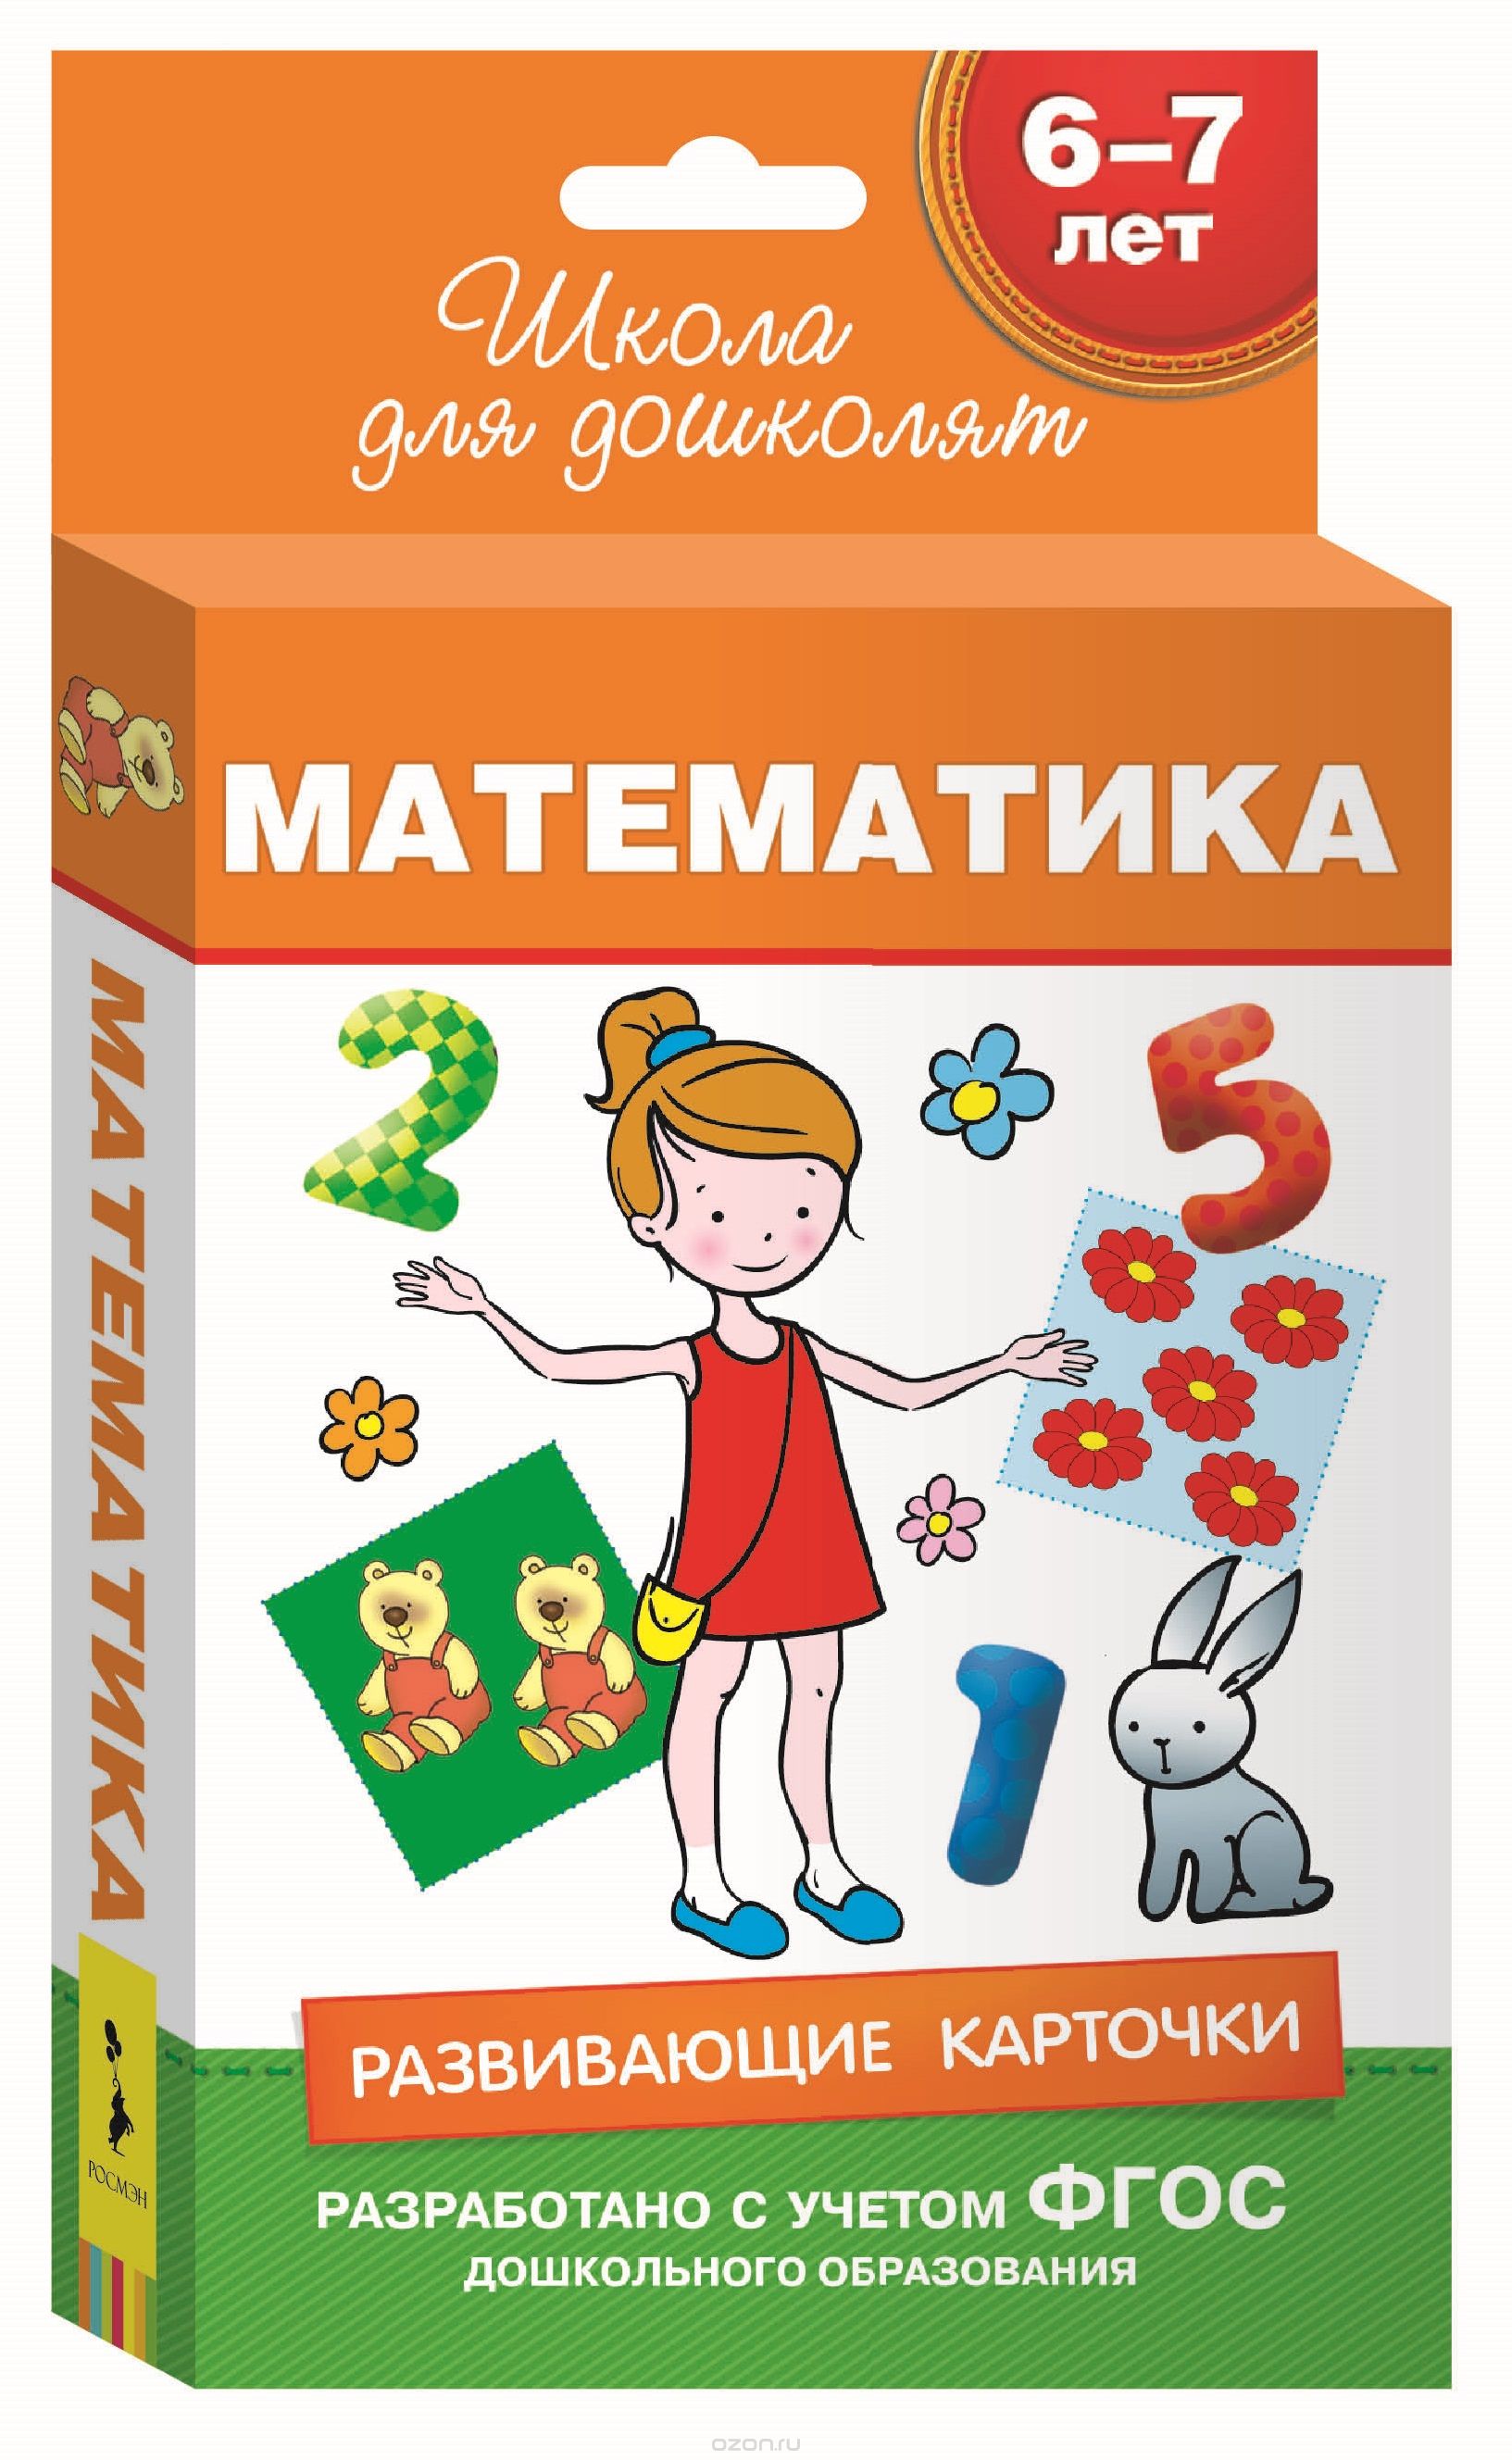 Математика. Развивающие карточки для детей 6-7 лет (набор из 36 карточек)